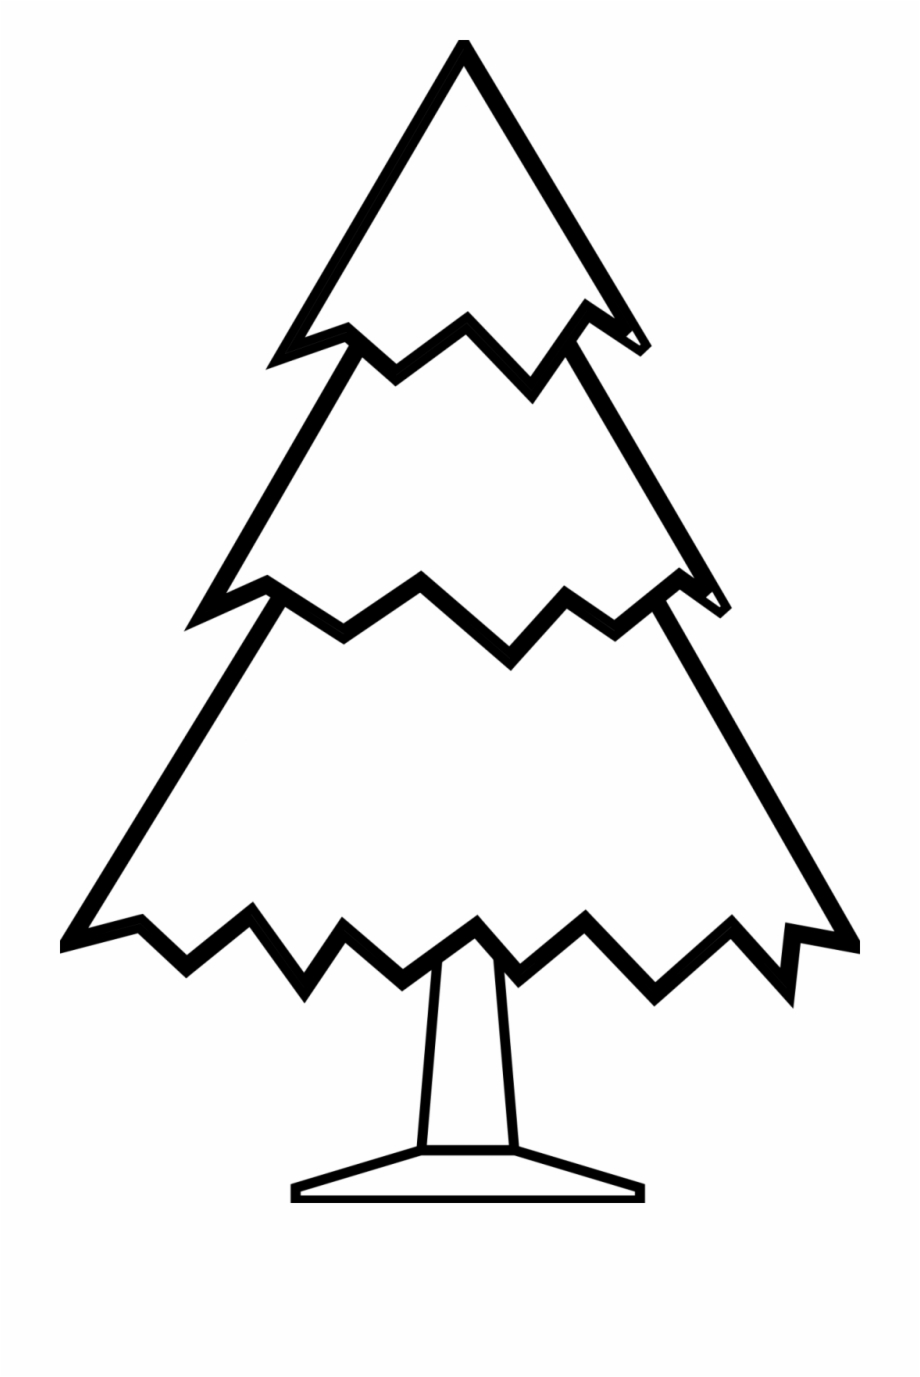 pine tree drawings easy
